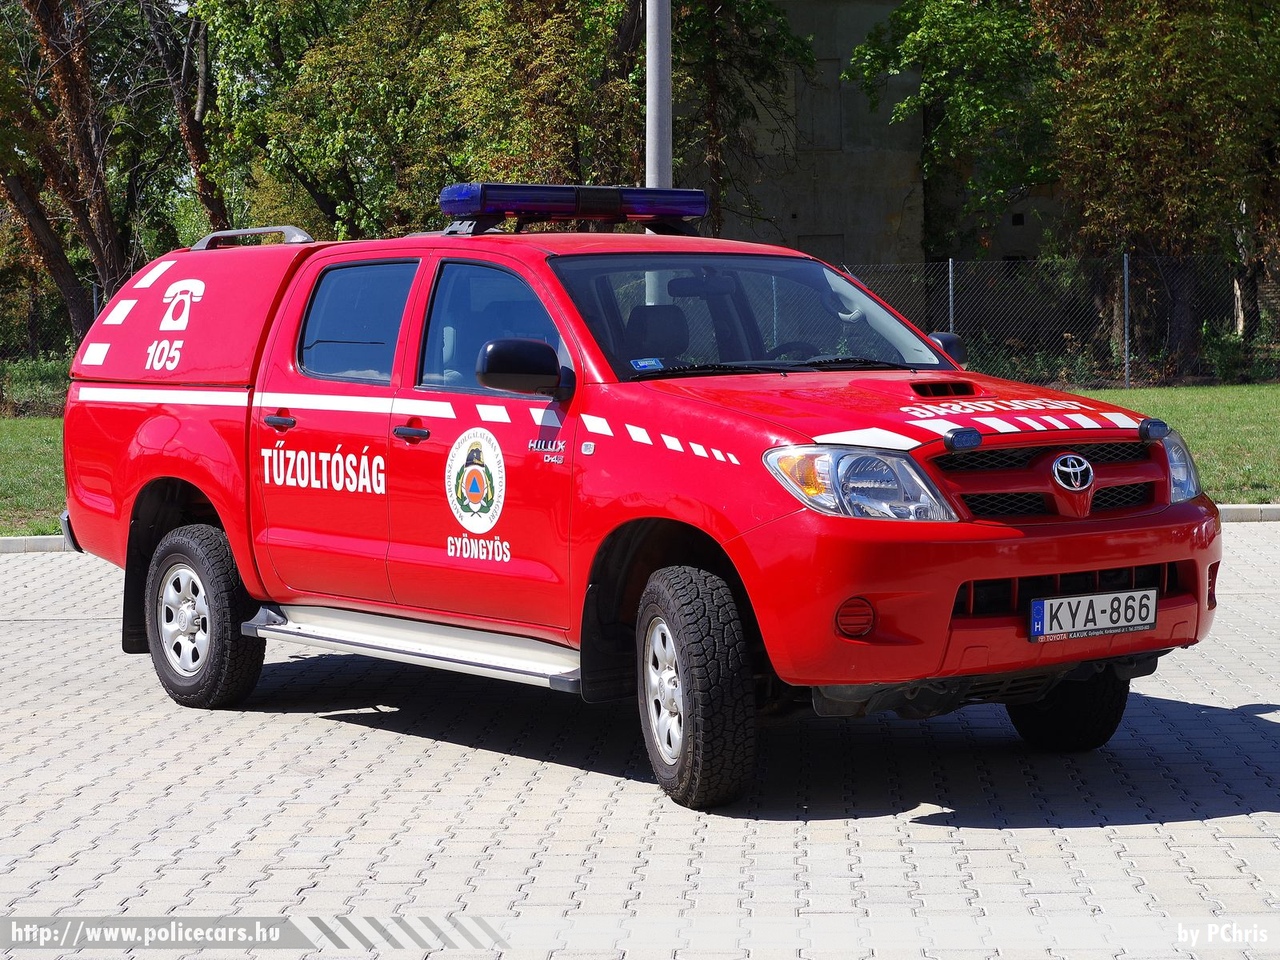 Toyota Hilux D4-D, Gyöngyösi Katasztrófavédelmi Kirendeltség, fotó: PChris
Keywords: tűzoltóautó tűzoltó tűzoltóság magyar Magyarország katasztrófavédelem fire firetruck Hungary hungarian KYA-866